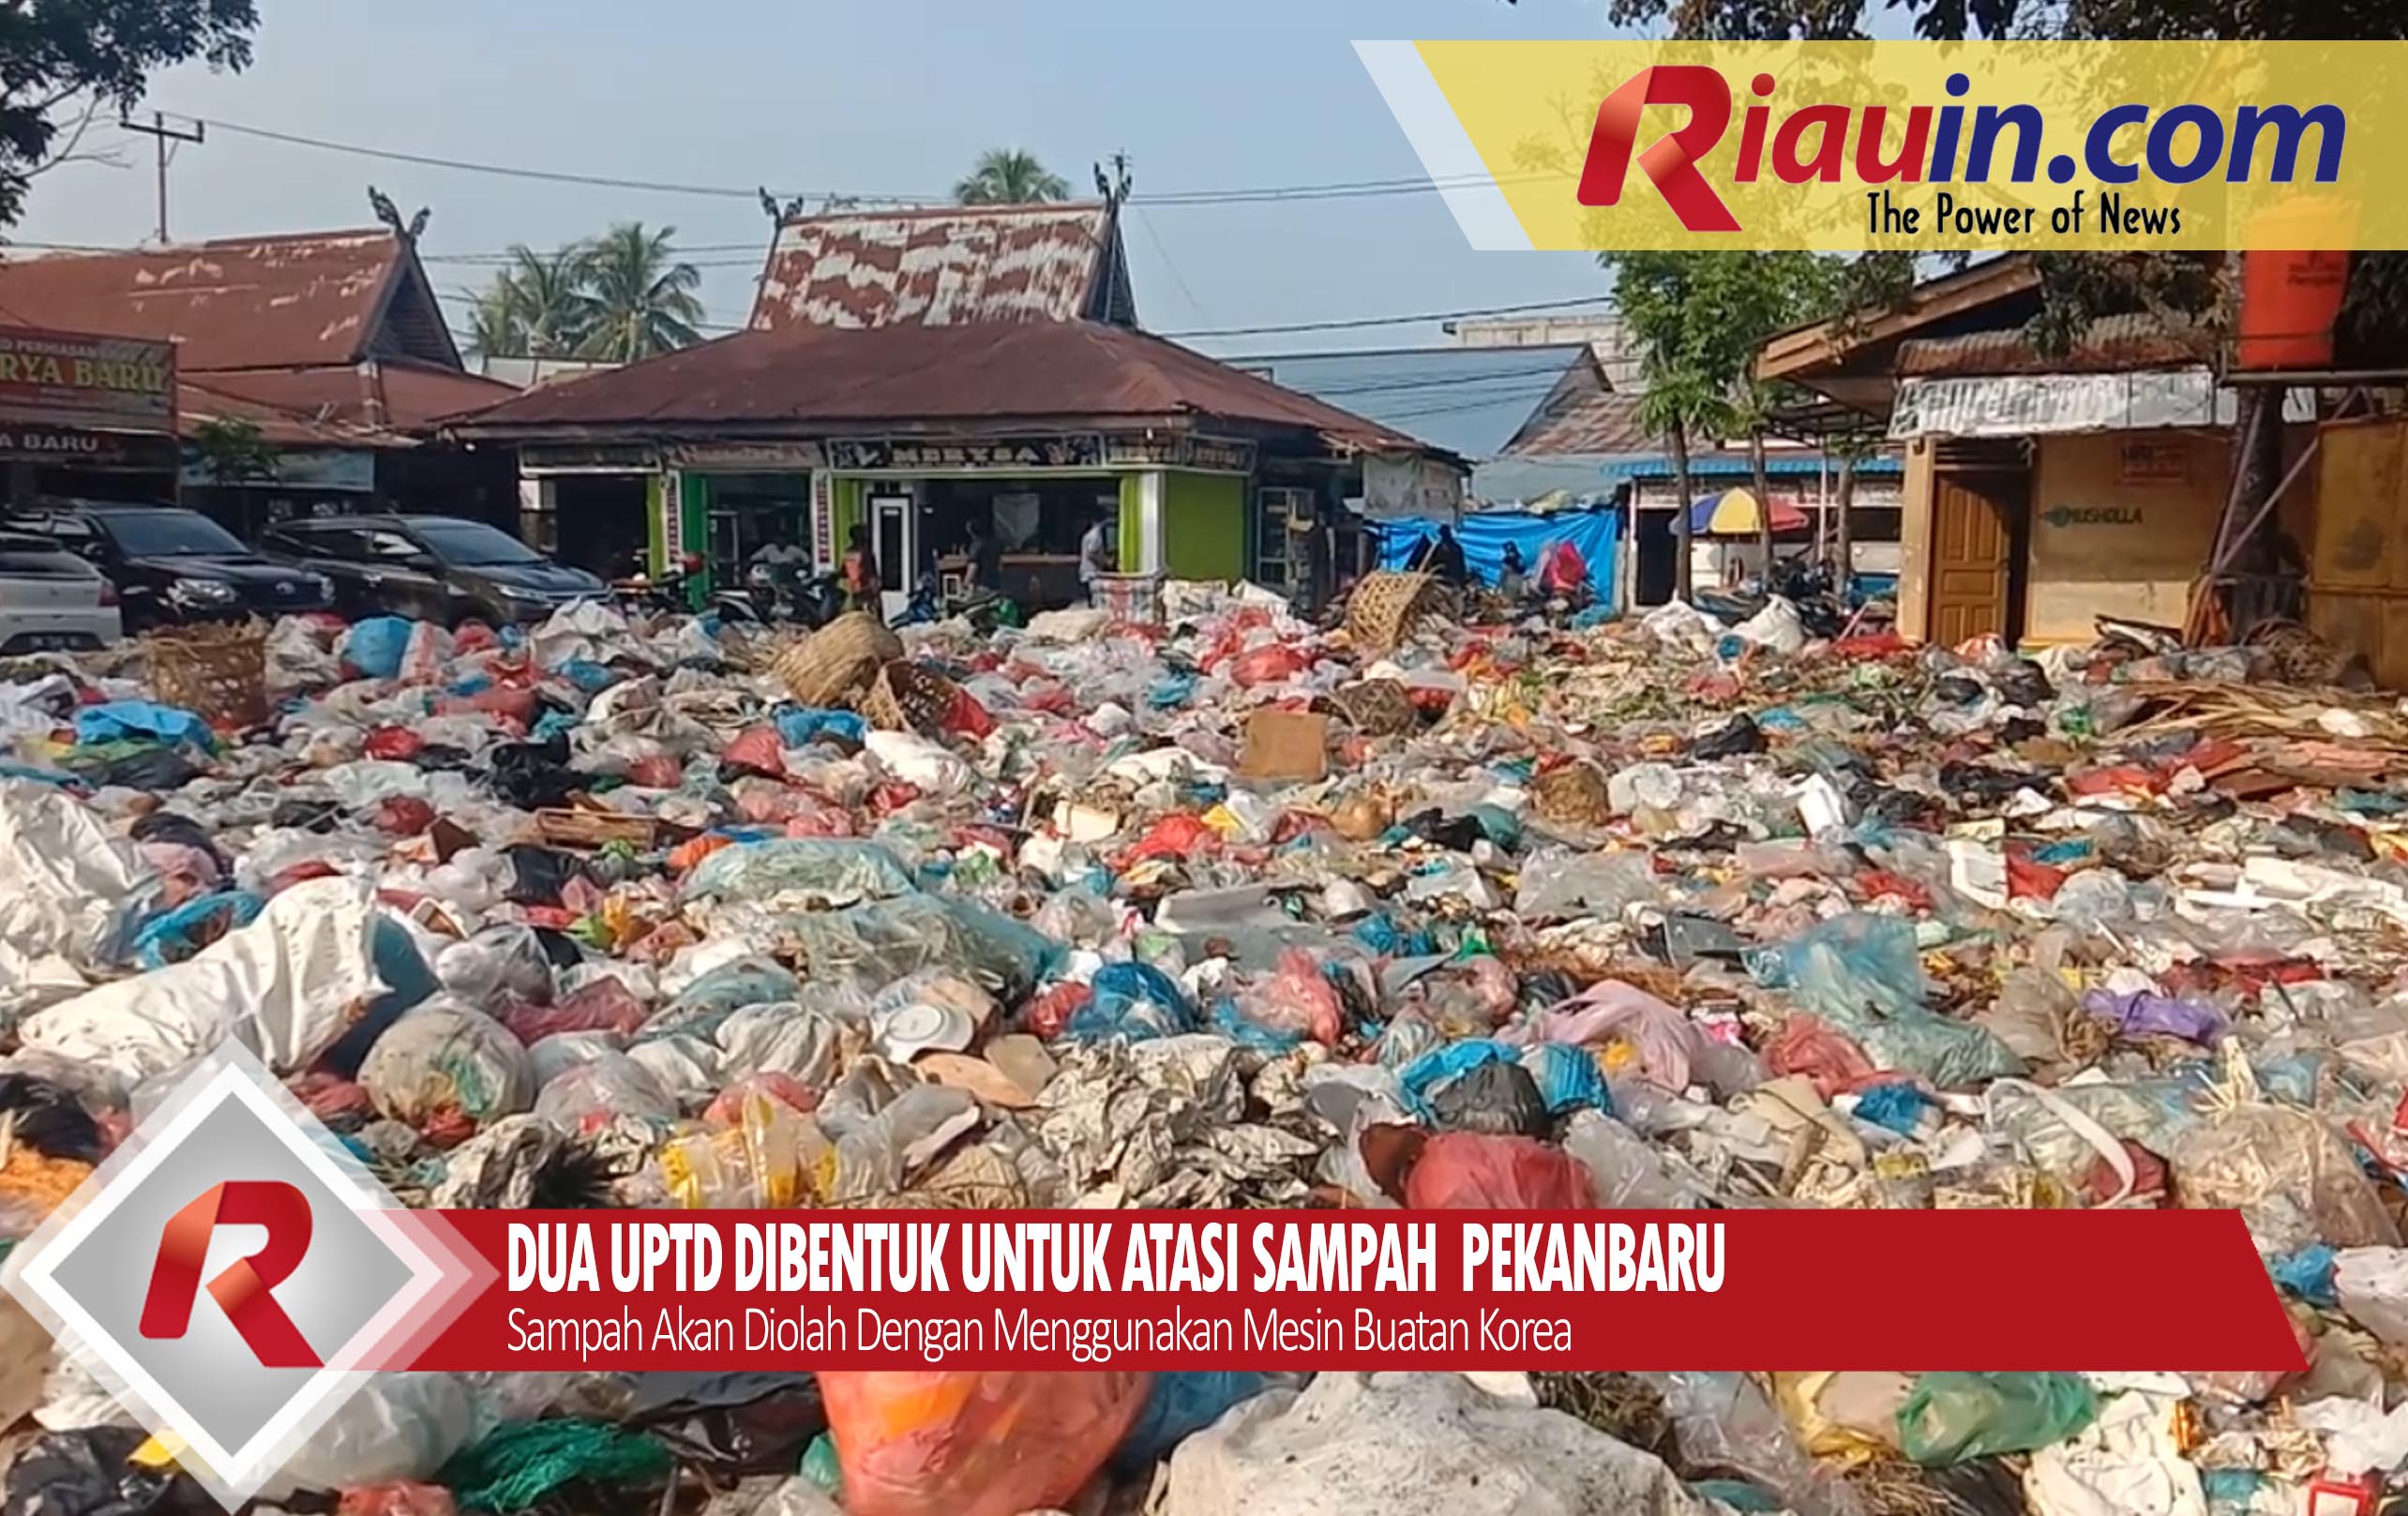 VIDEO: 2 UPTD Dibentuk Atasi Sampah di Kota Pekanbaru